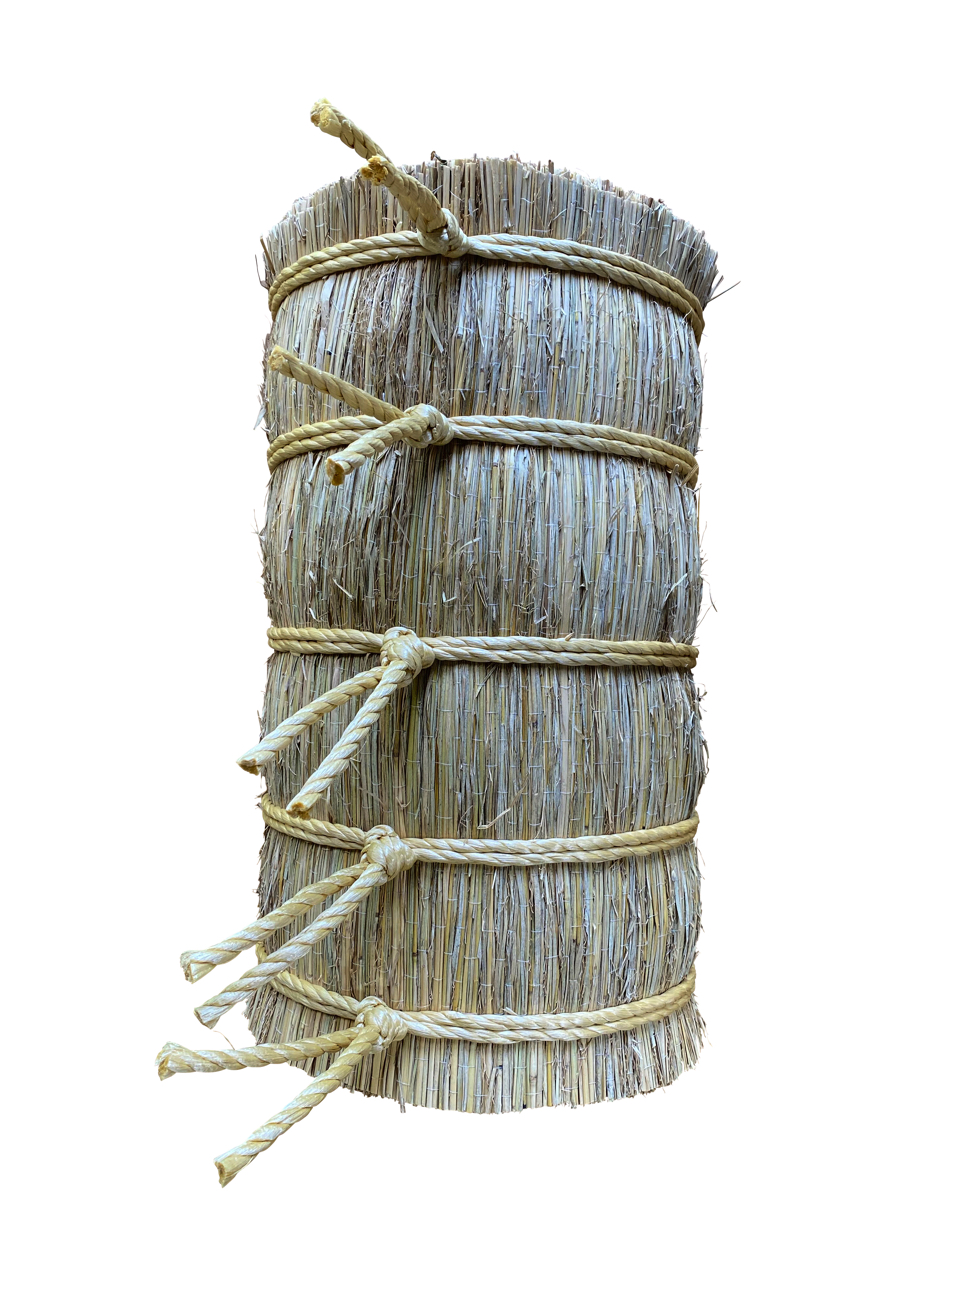 小型巻藁 【サイズ】直径約28～30cm 長さ約50cm 重さ約9.5kg